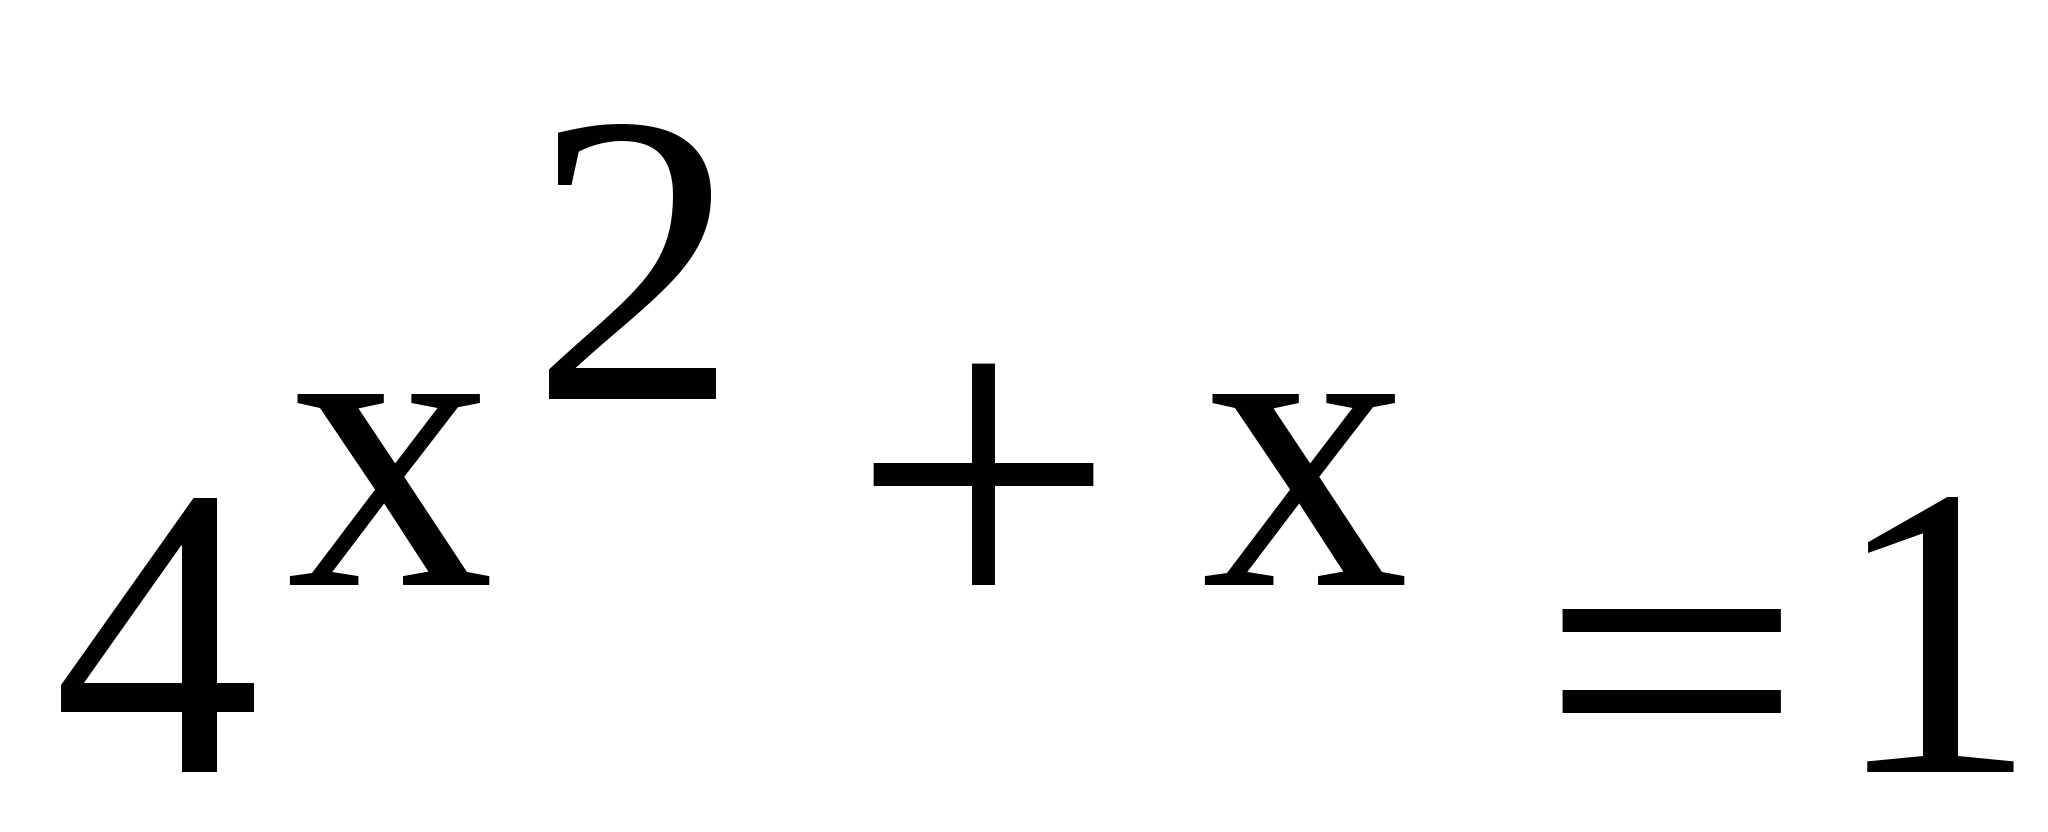 Программа элективного курса по математике Такие разные уравнения для 11 класса